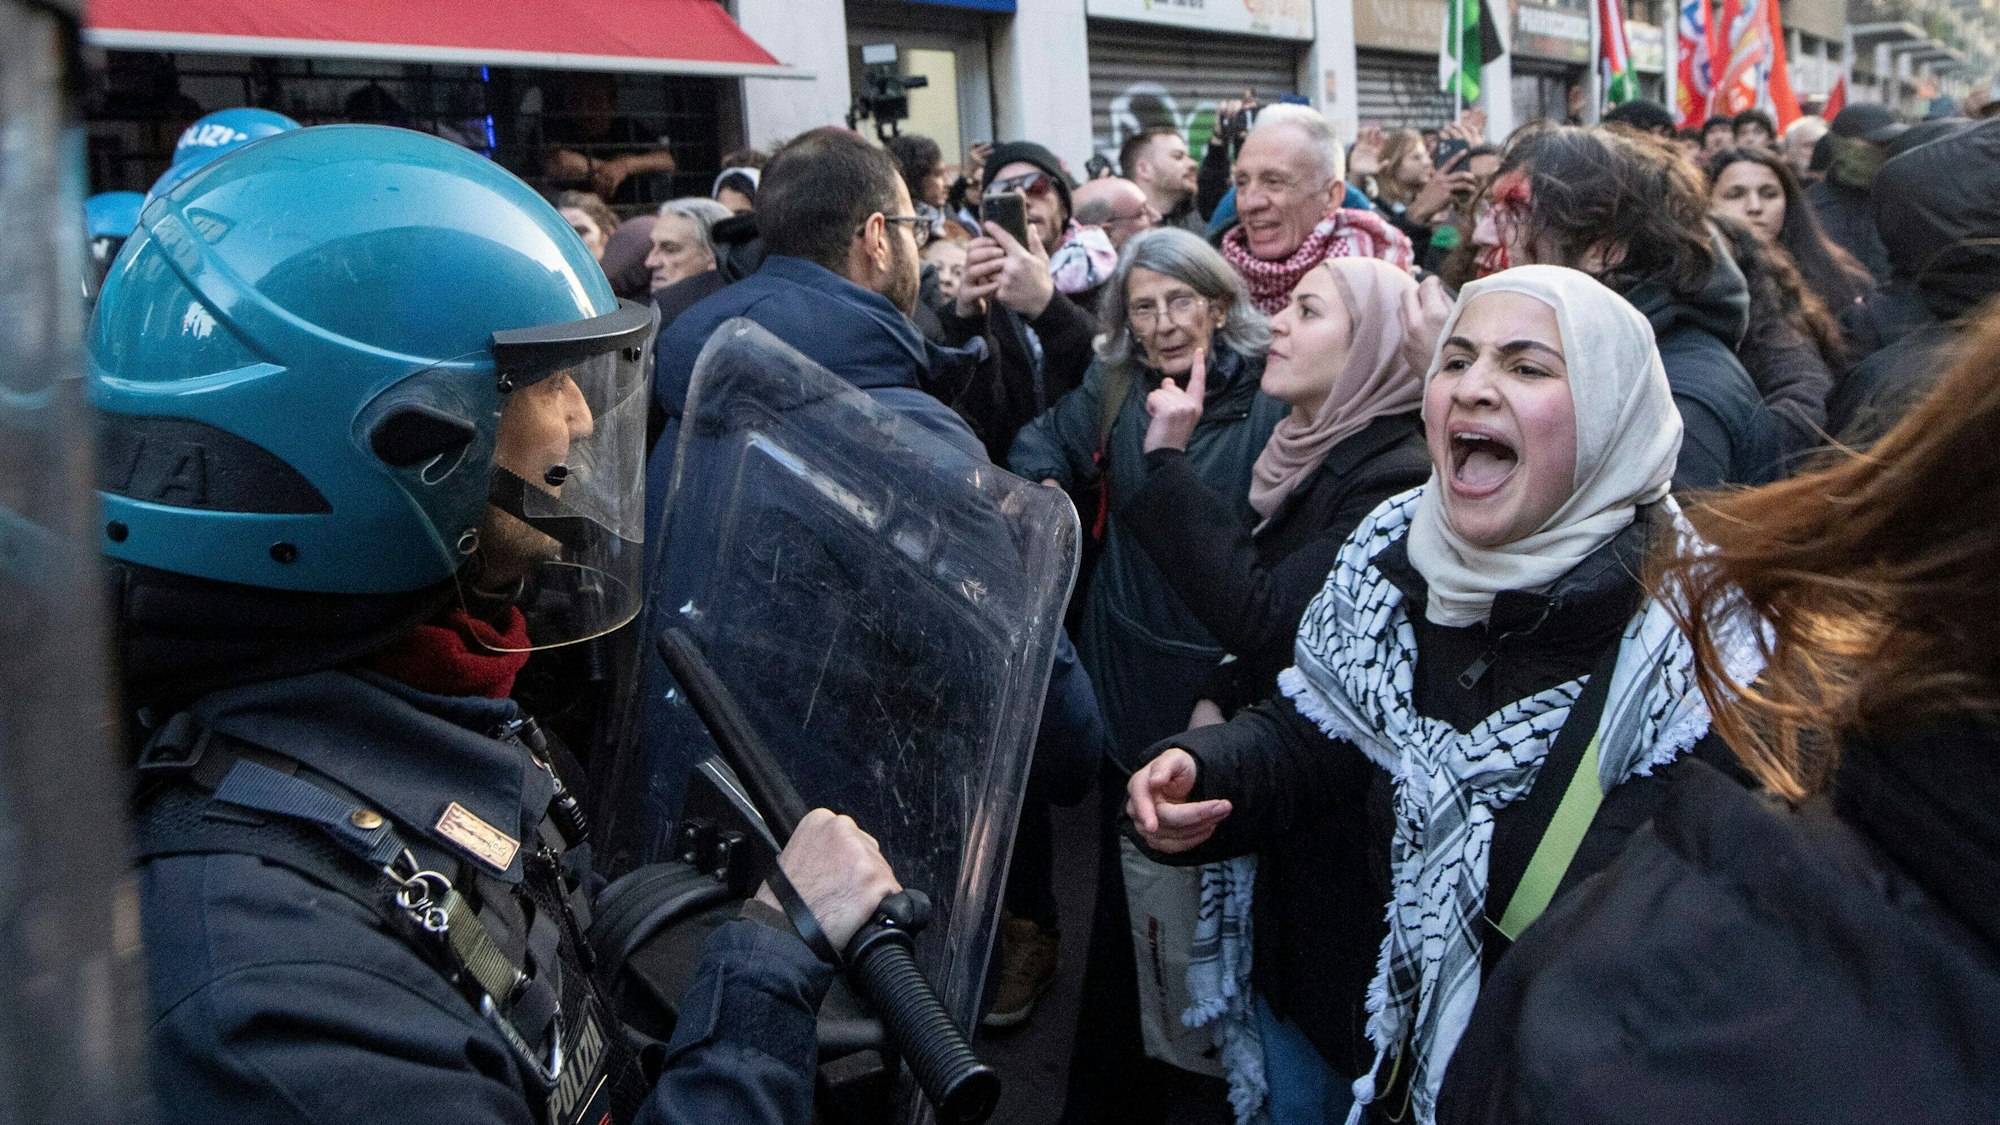 Eine Frau reagiert während einer Kundgebung zur Unterstützung der Palästinenser. Bei der Kundgebung ist es zu Zusammenstößen zwischen der Polizei und Demonstranten gekommen.